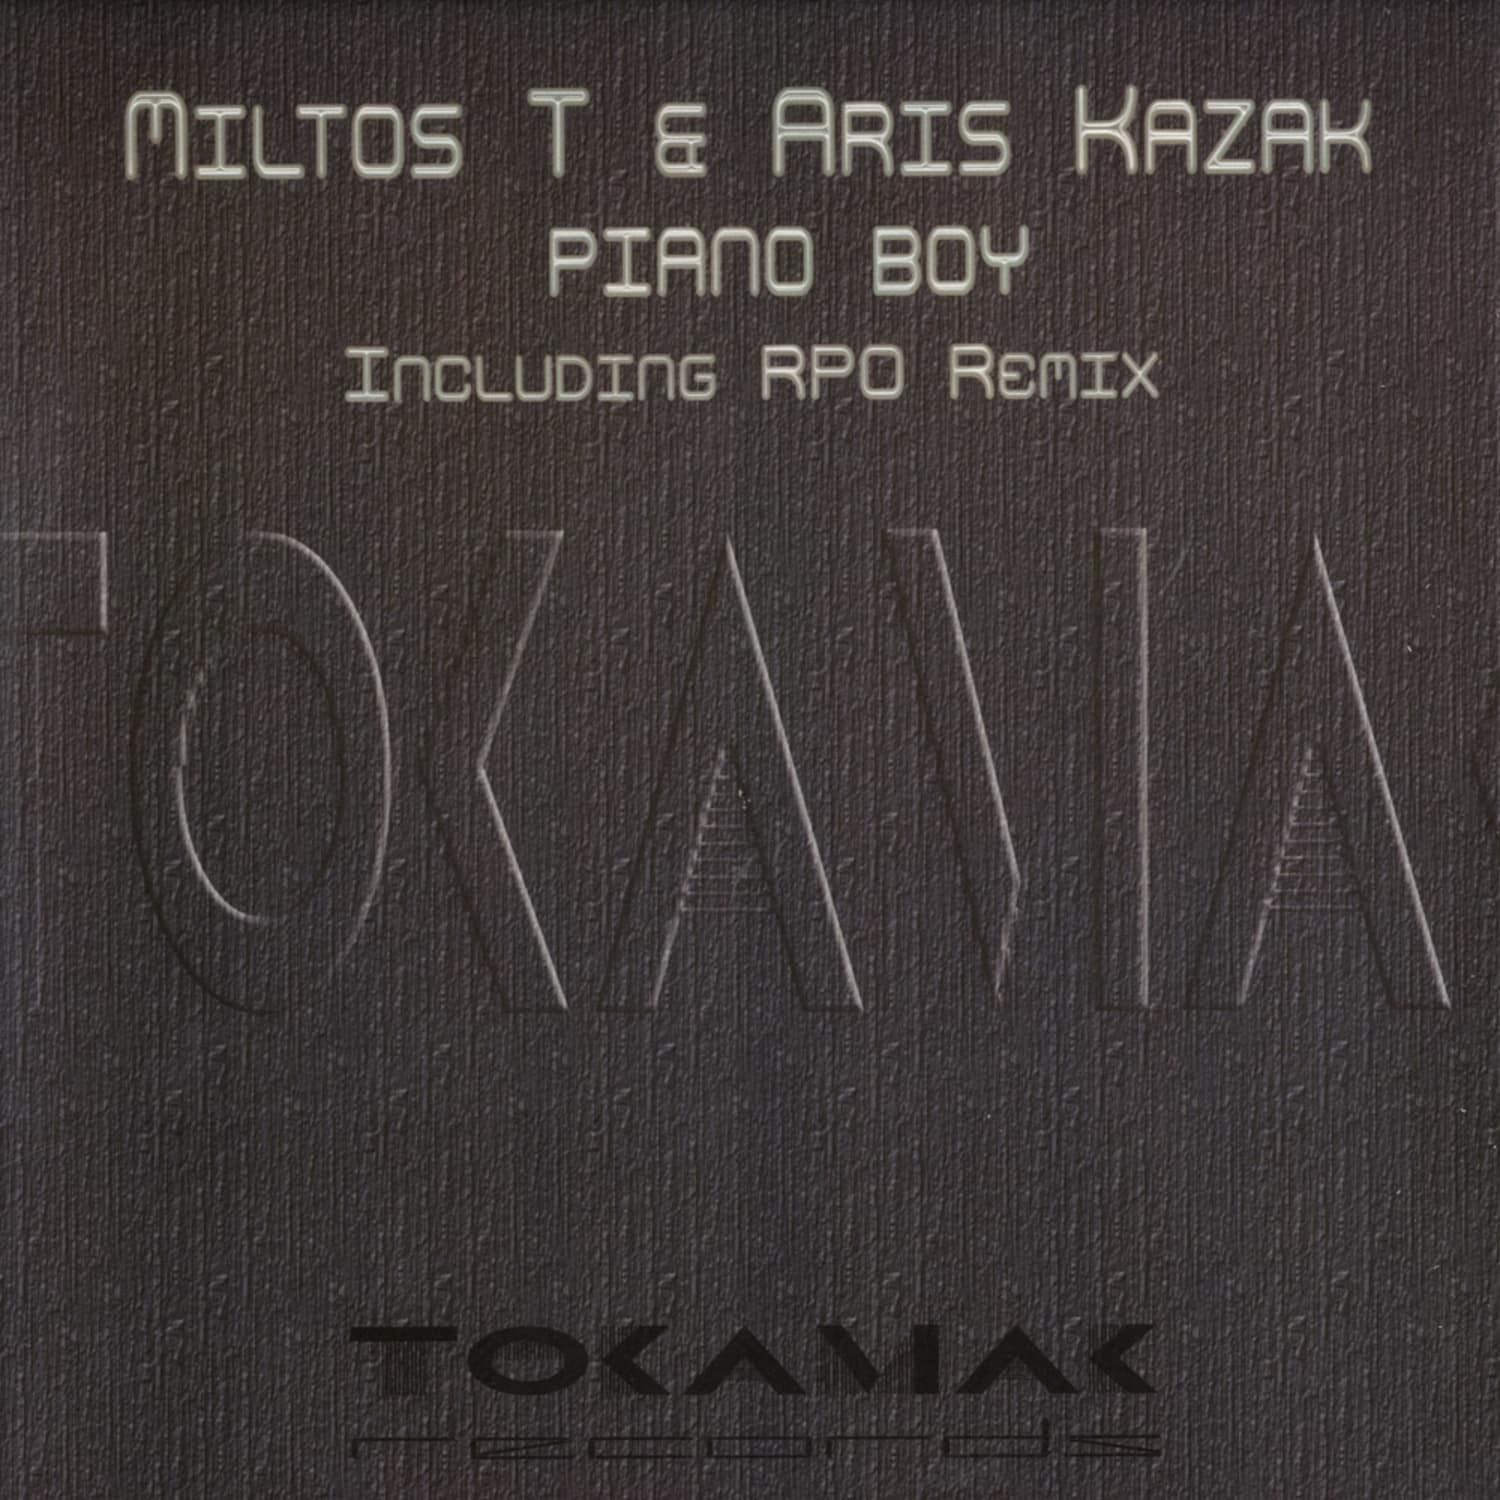 Miltos T & Aris Kazak - PIANO BOY